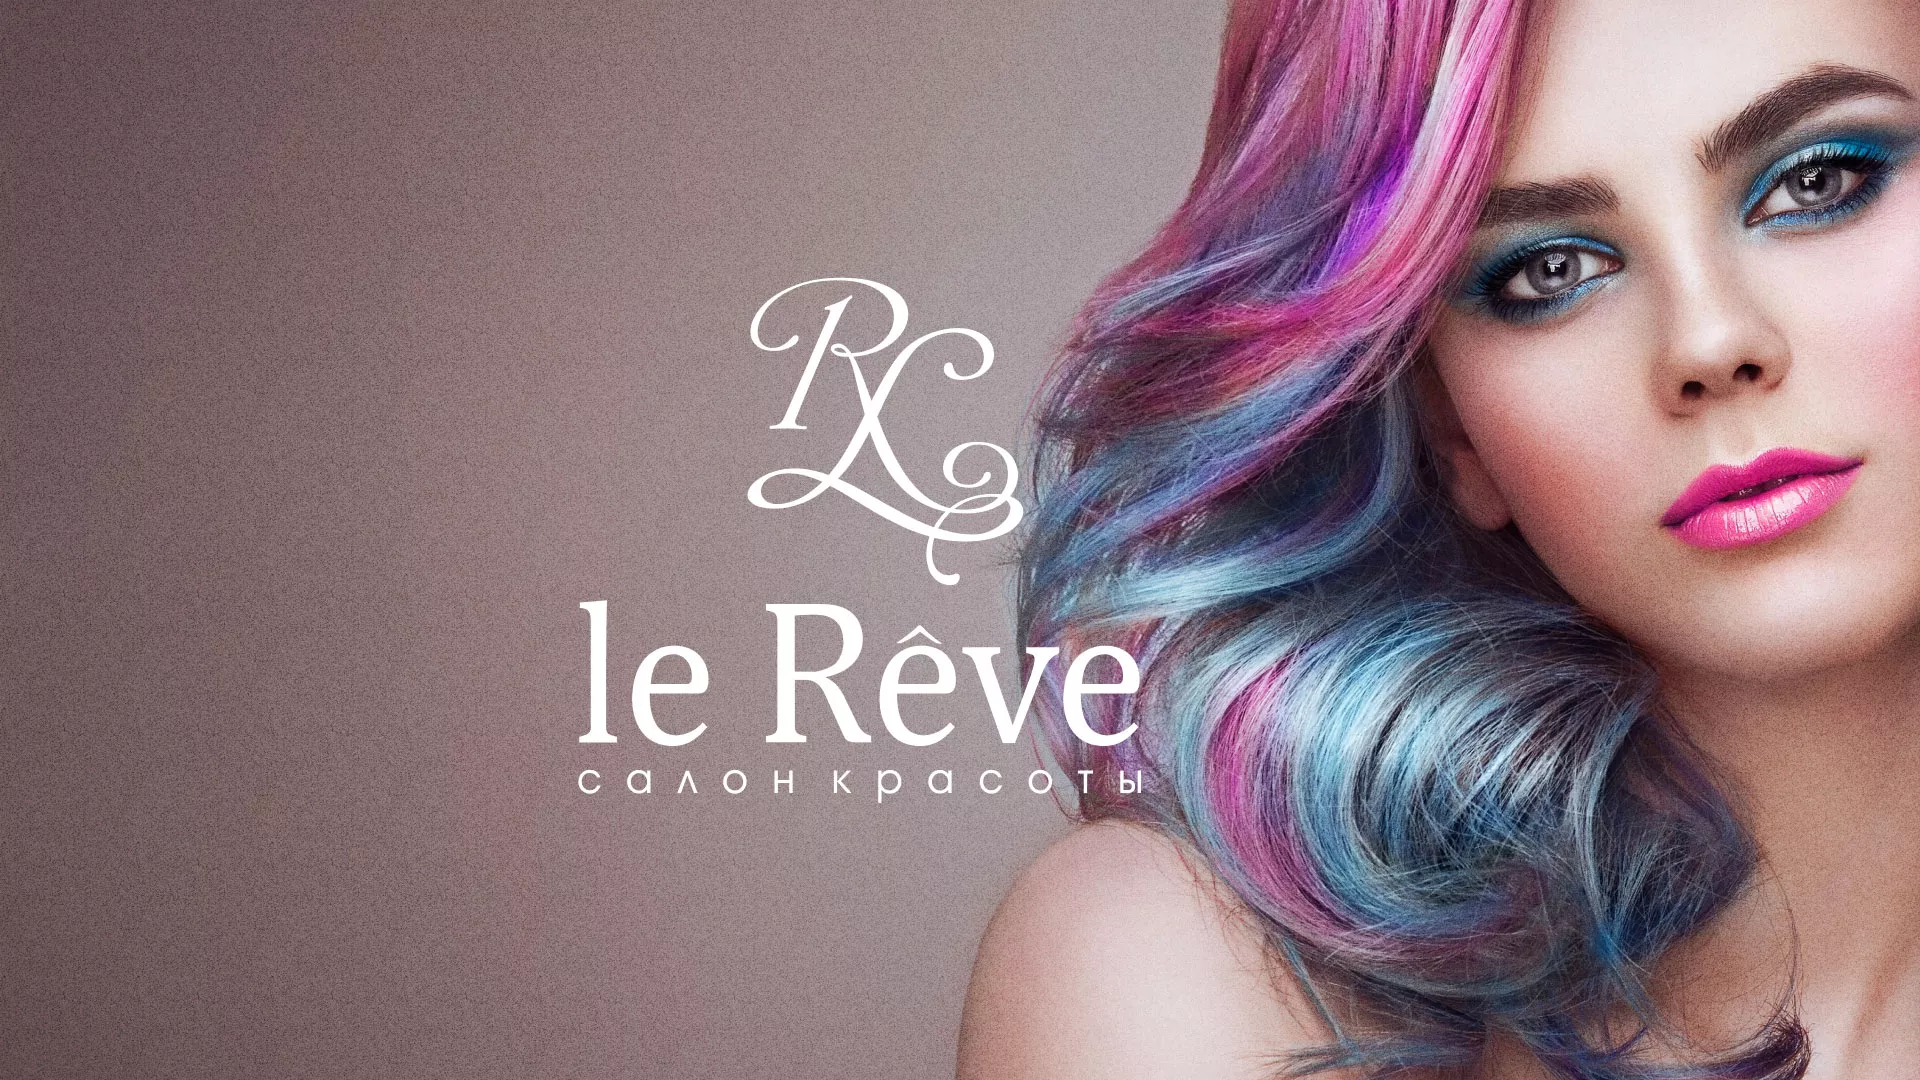 Создание сайта для салона красоты «Le Reve» в Альметьевске